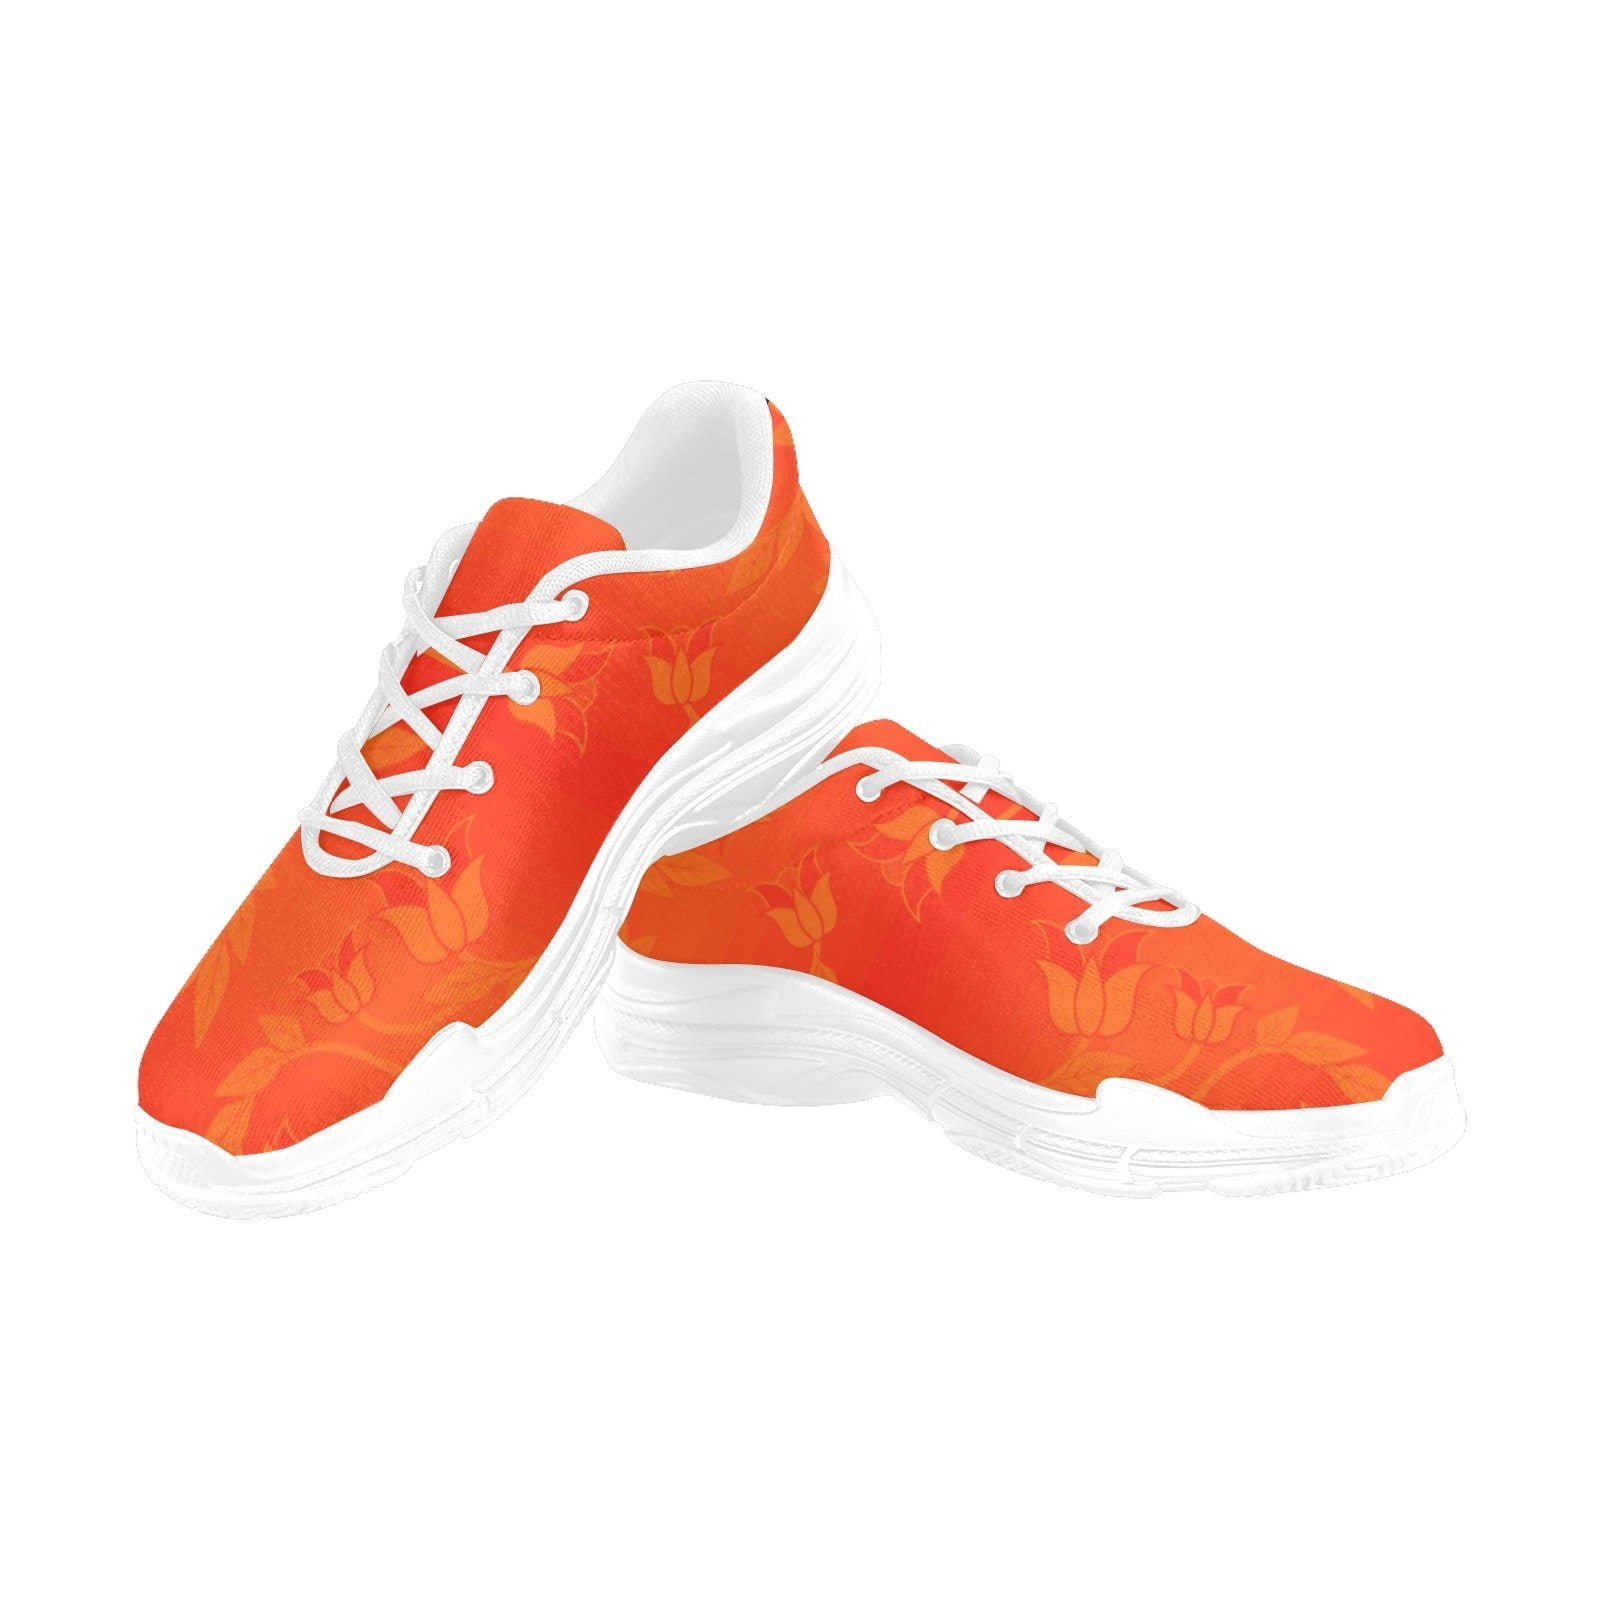 Orange Days Orange Chunky Men's Running Shoes Artsadd US5 White Sole 